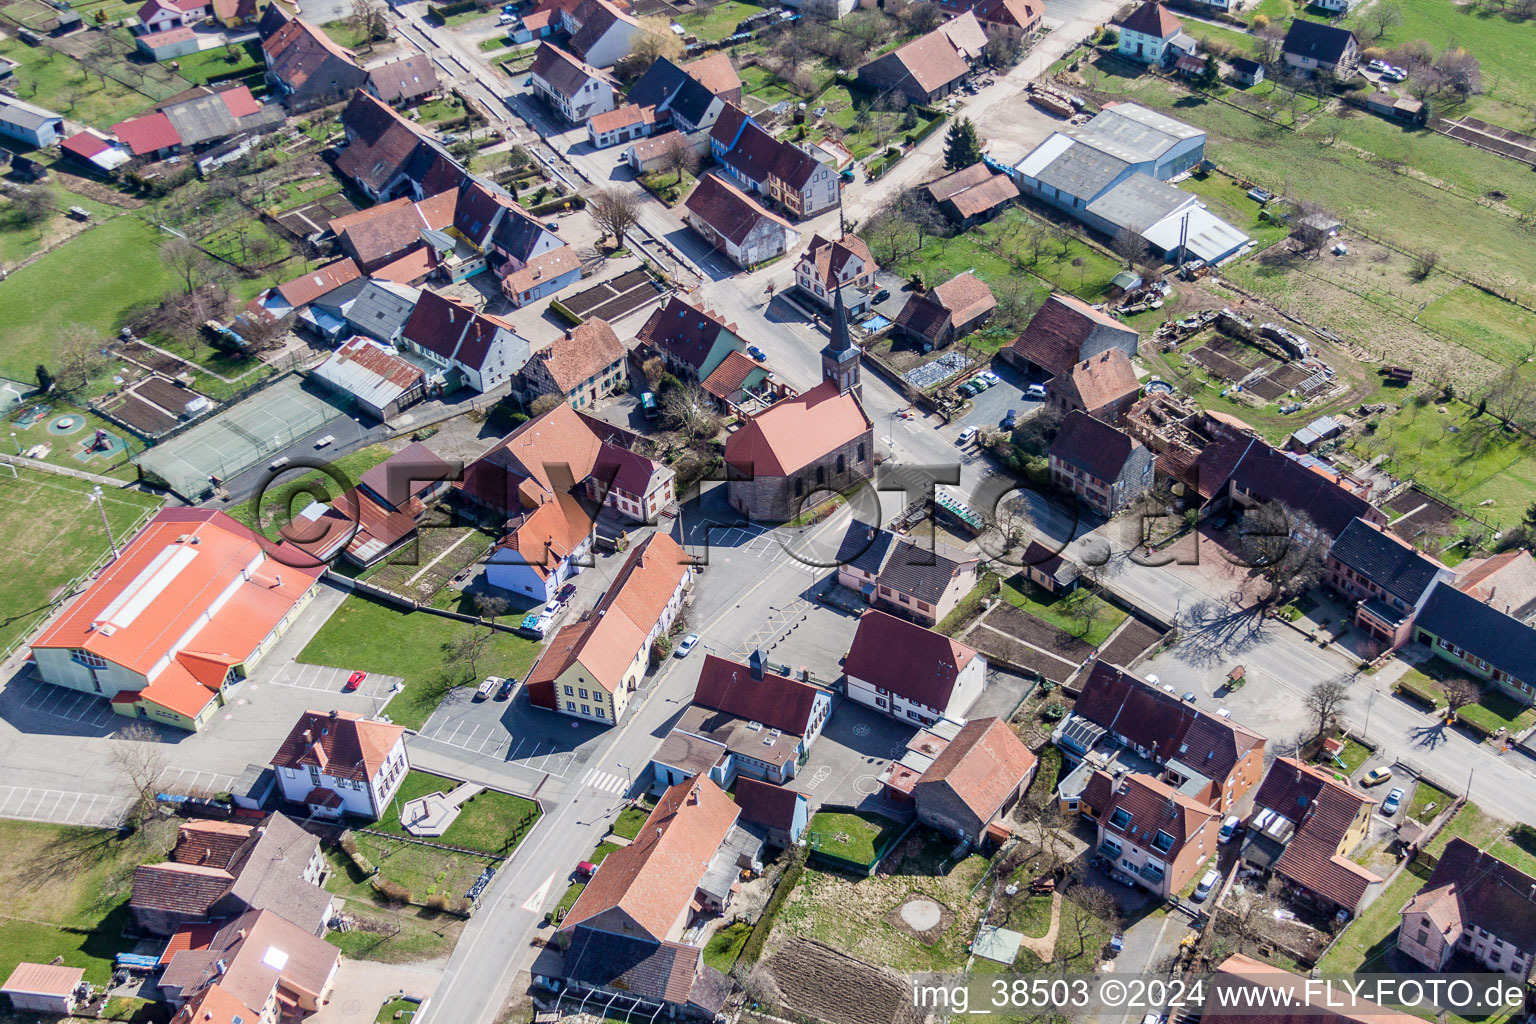 Vue aérienne de Bâtiment d'église au centre du village à Petersbach dans le département Bas Rhin, France